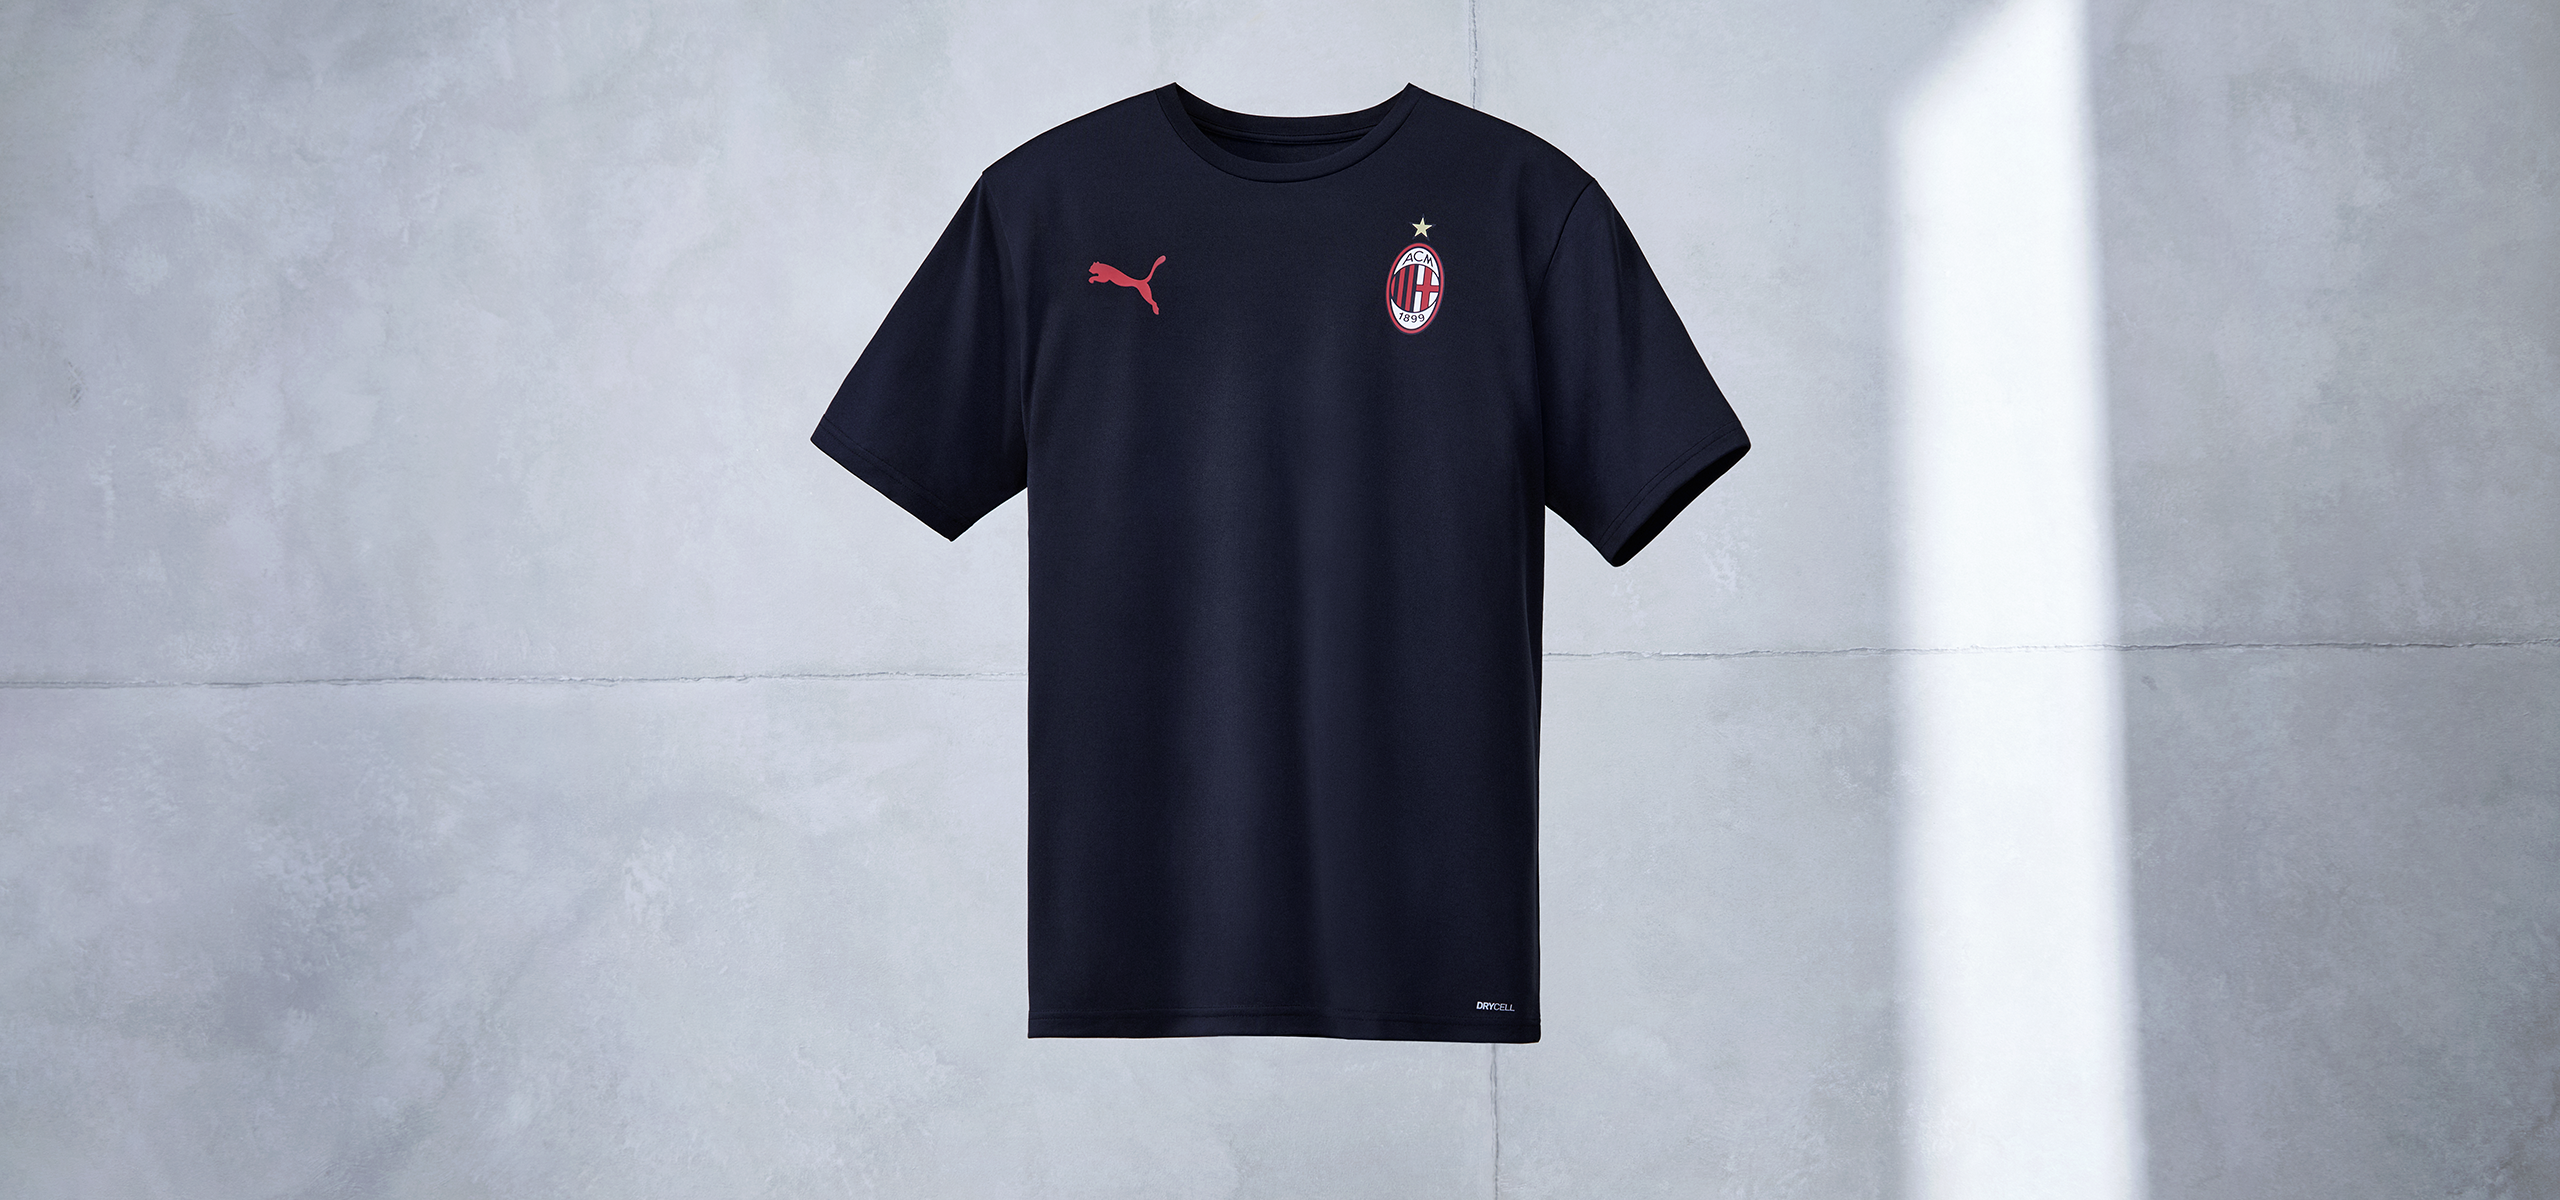 RE:JERSEY - Milan players to wear Puma jerseys | AC Milan